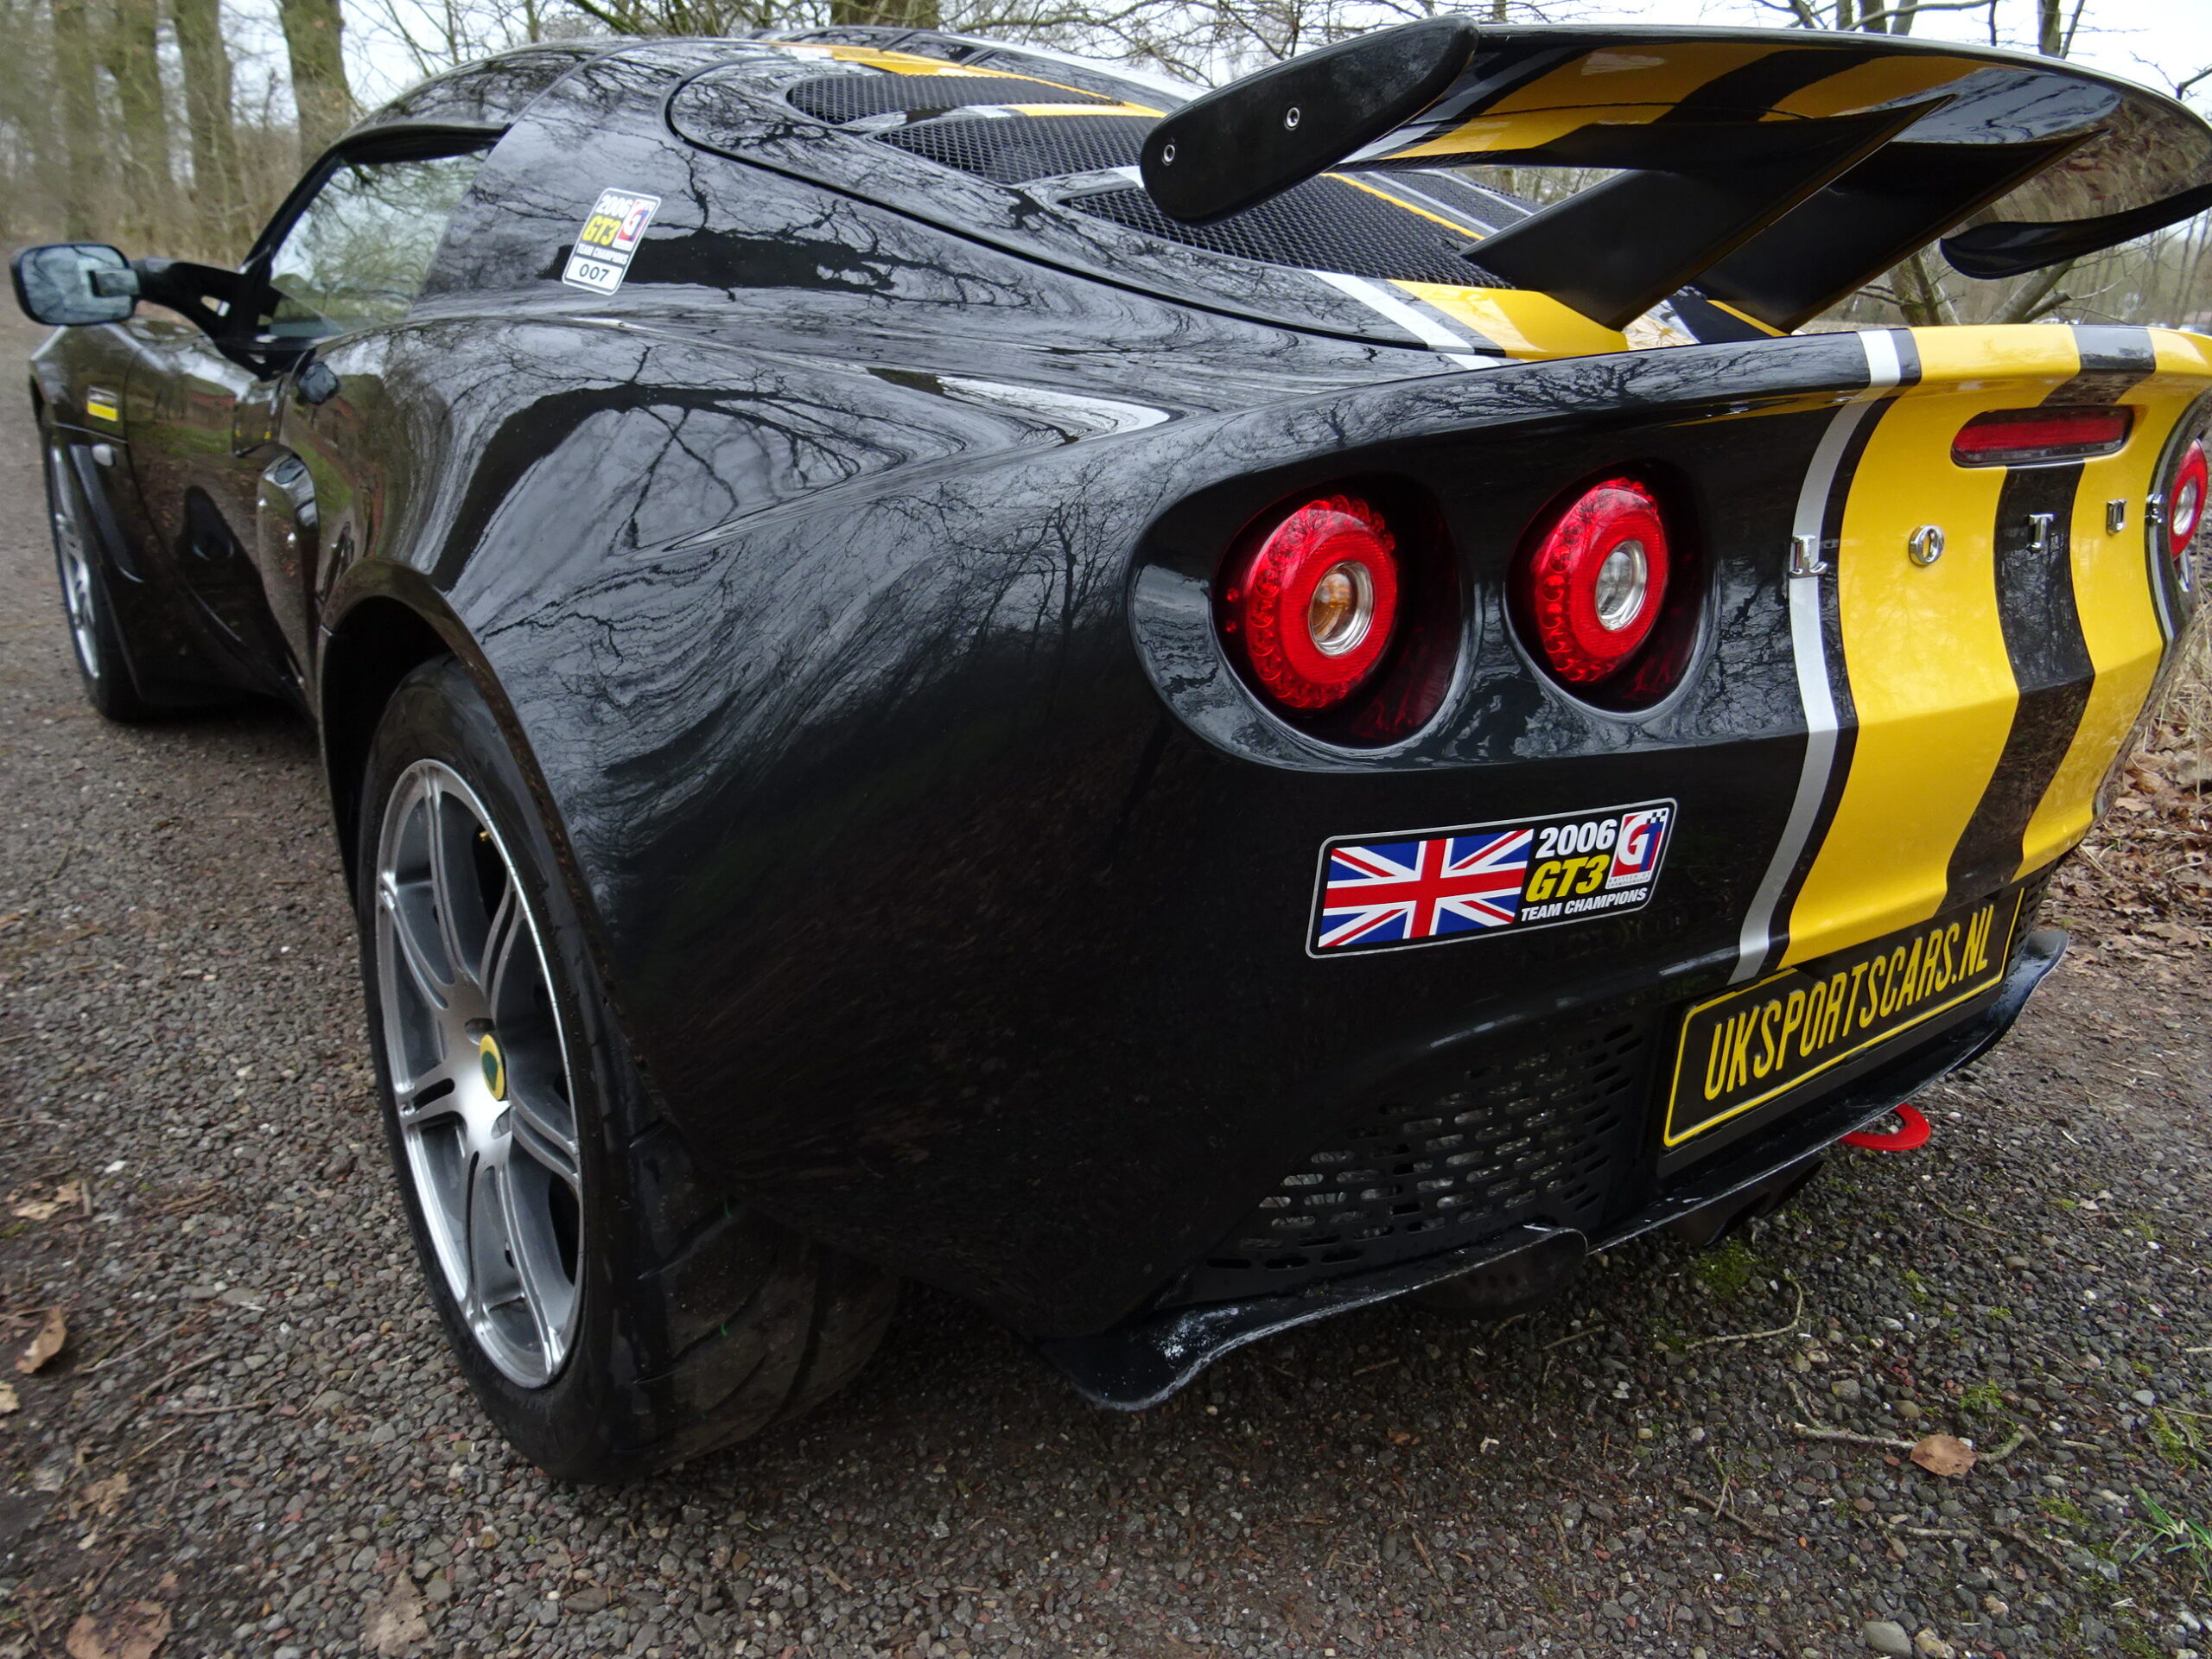 Lotus Exige British GT Special Edition vol